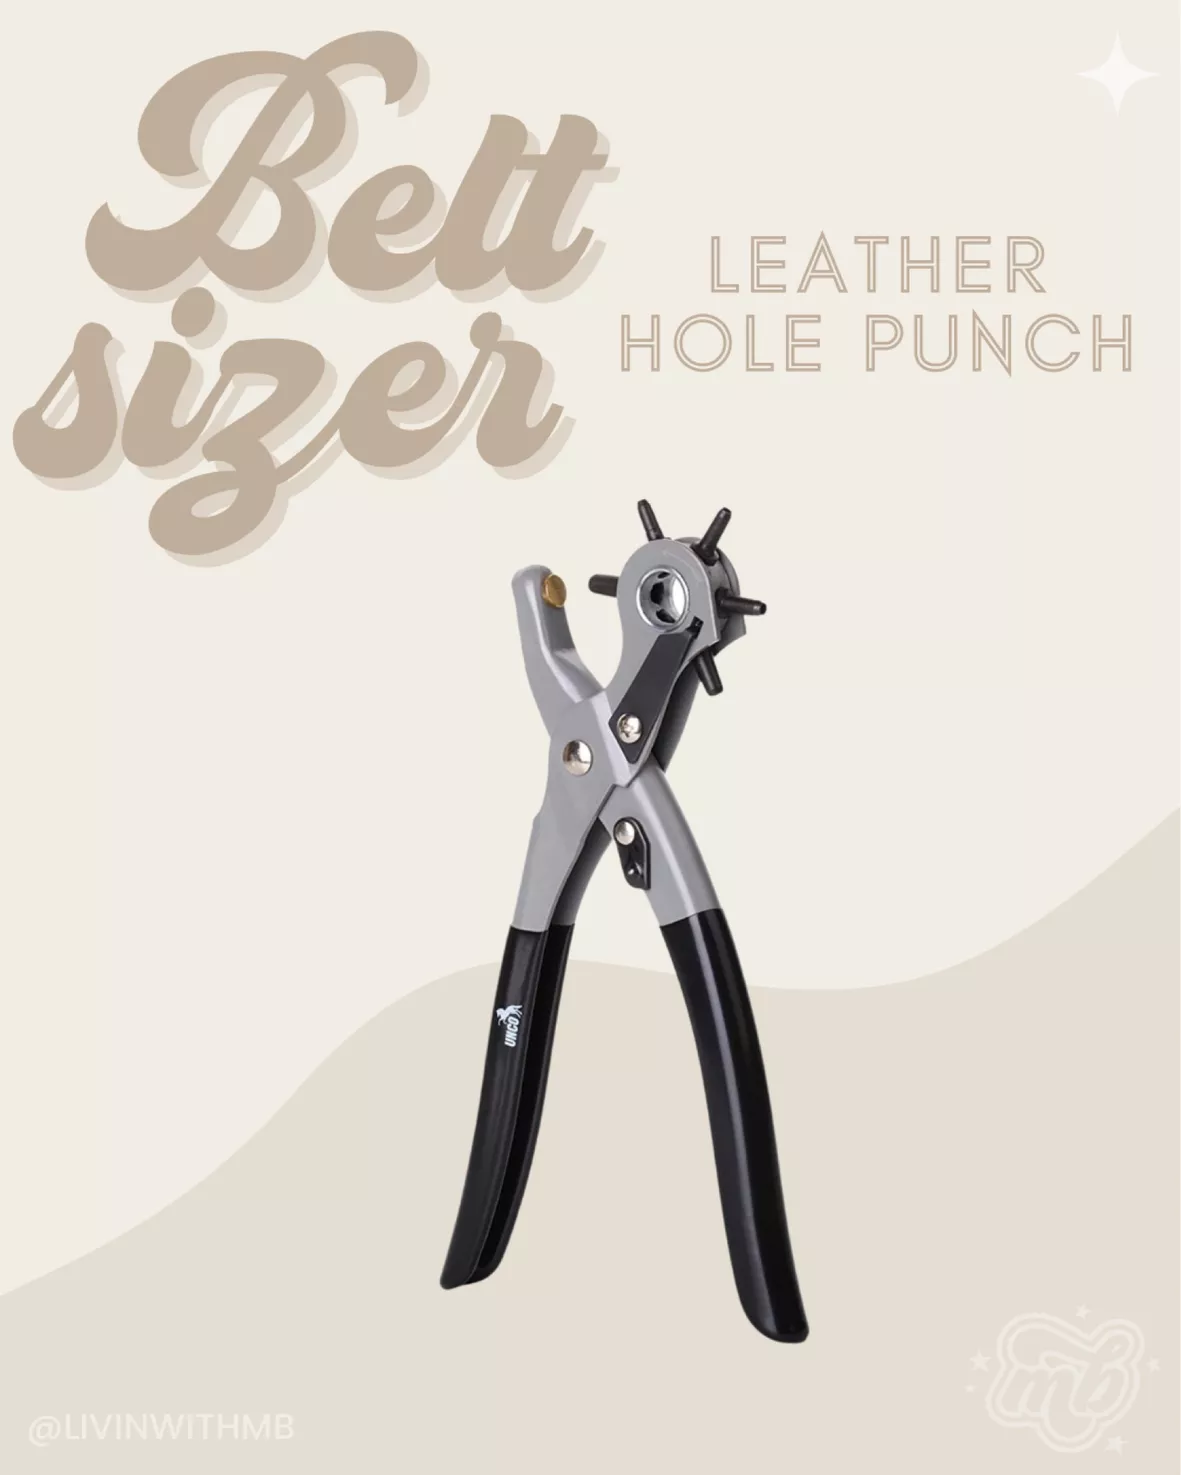 UNCO- Leather Hole Punch Tool, Multi Hole Sizes, Belt Hole Puncher, Leather  Punch Tool, Leather Hole Punch for Belts, Leather Hole Puncher, Belt